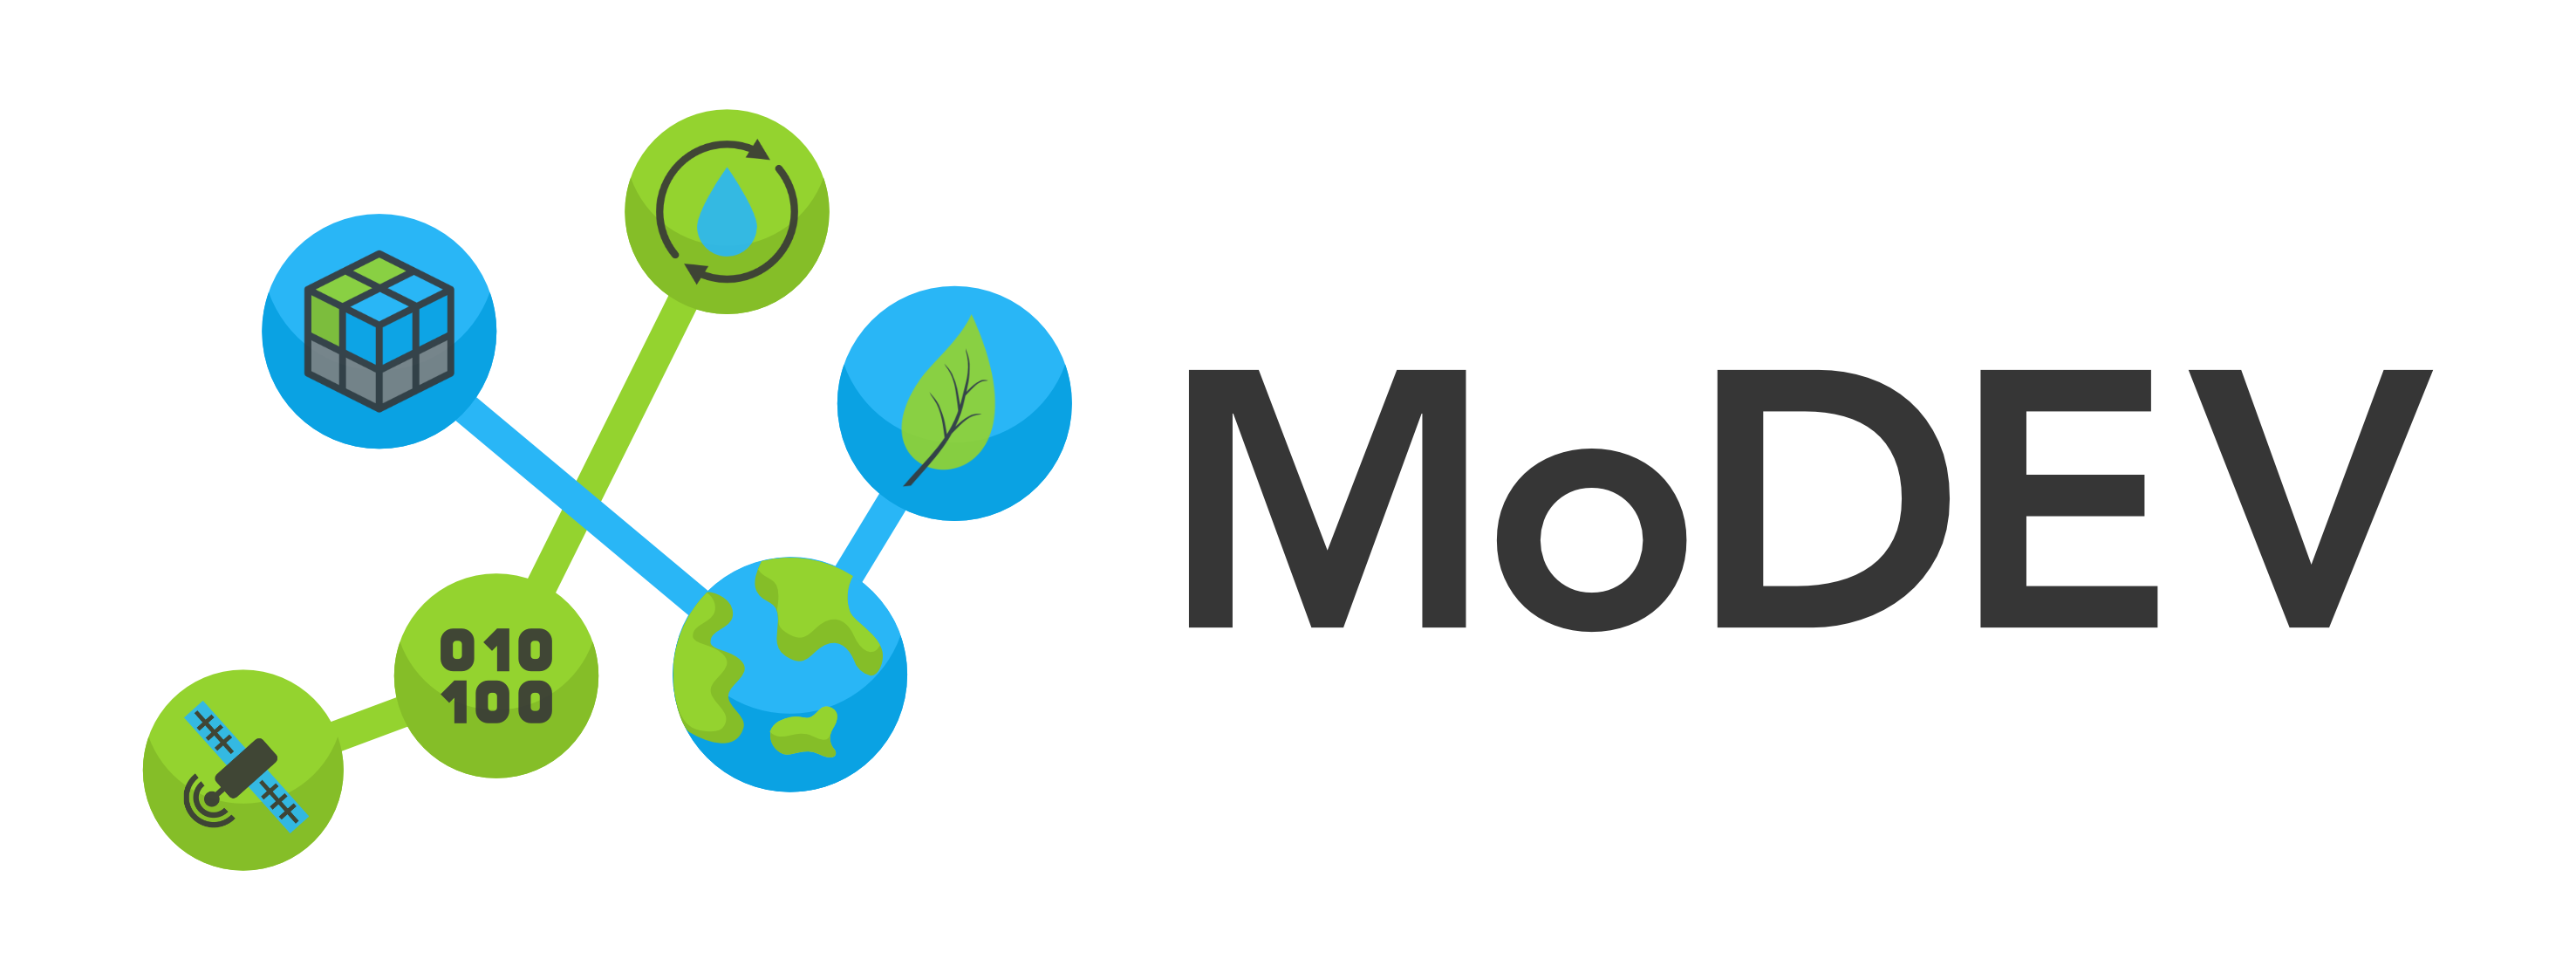 MoDEV Logo